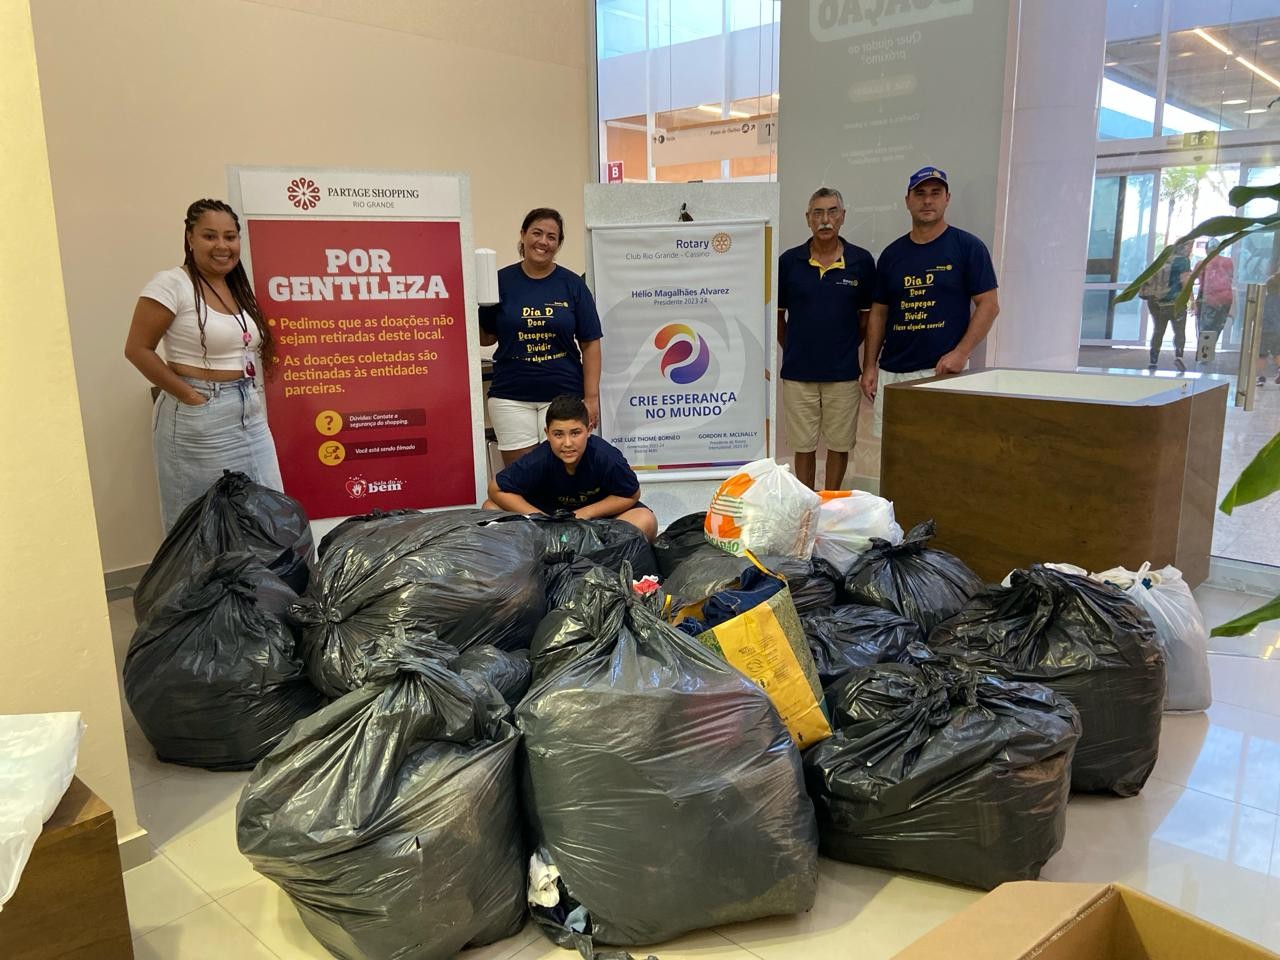 Partage Rio Grande, Rotary e Livraria Vanguarda unem forças e entregam roupas e materiais escolares à comunidade rio-grandina